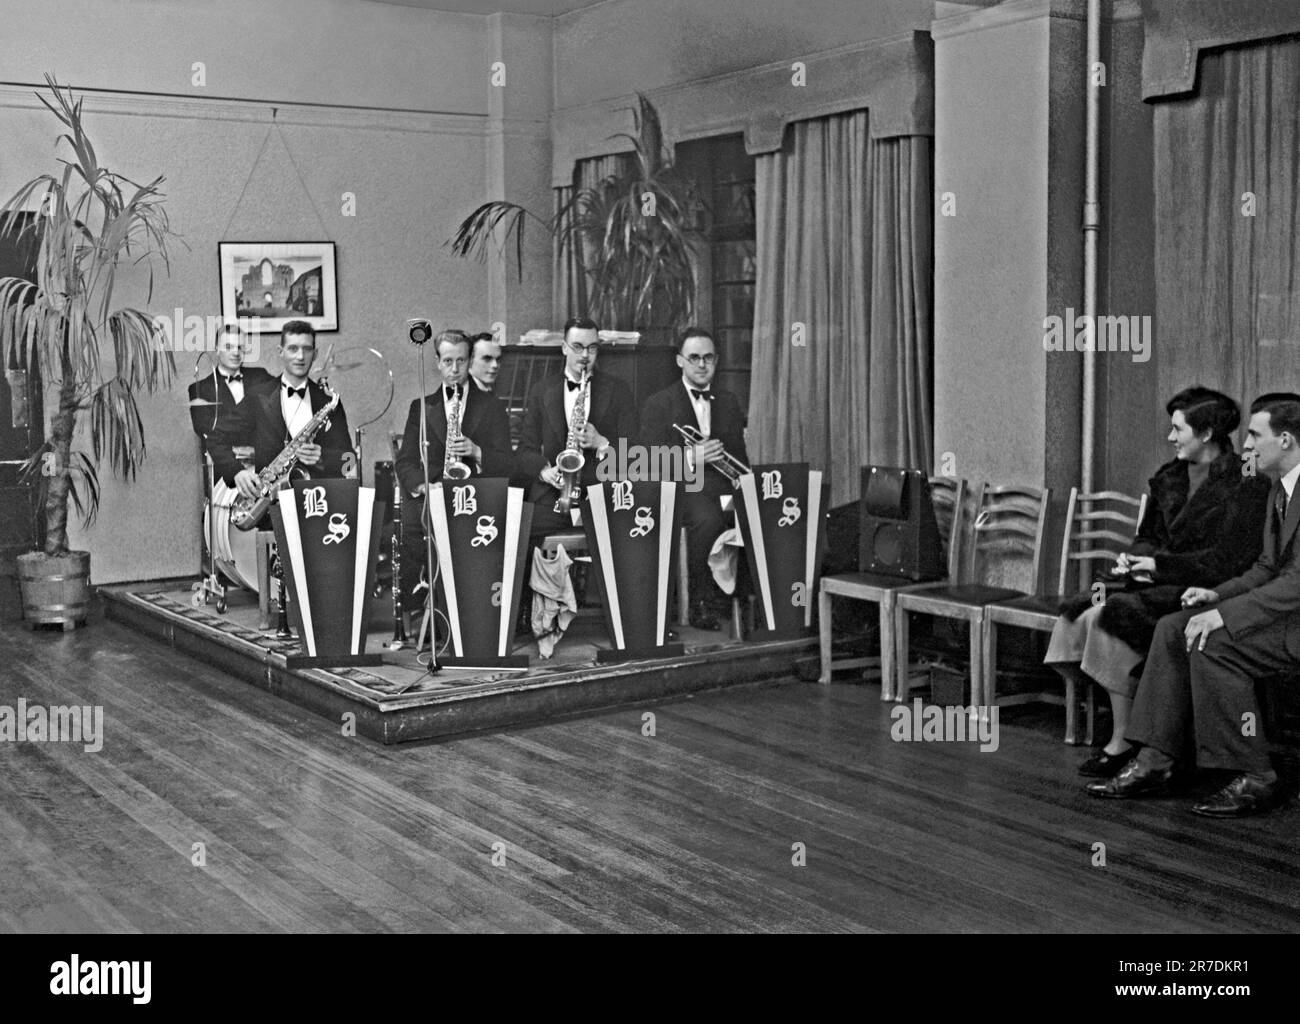 Eine britische vierköpfige Tanzband, die Brian Scammell Dance Band auf der Bühne in Großbritannien im Jahr 1937. Die frühen Tanz- und Swing-Bands hatten ihre Blütezeit in Großbritannien zwischen den 1920er und 30s Jahren. Bands spielten in Tanzsälen und Hotelballsälen. Sie spielten melodische, gute Musik und einzelne Spieler spielten in mehreren Bands. Dieses Bild ist von einem alten Glasnegativ – einem alten 1930er-Foto. Stockfoto